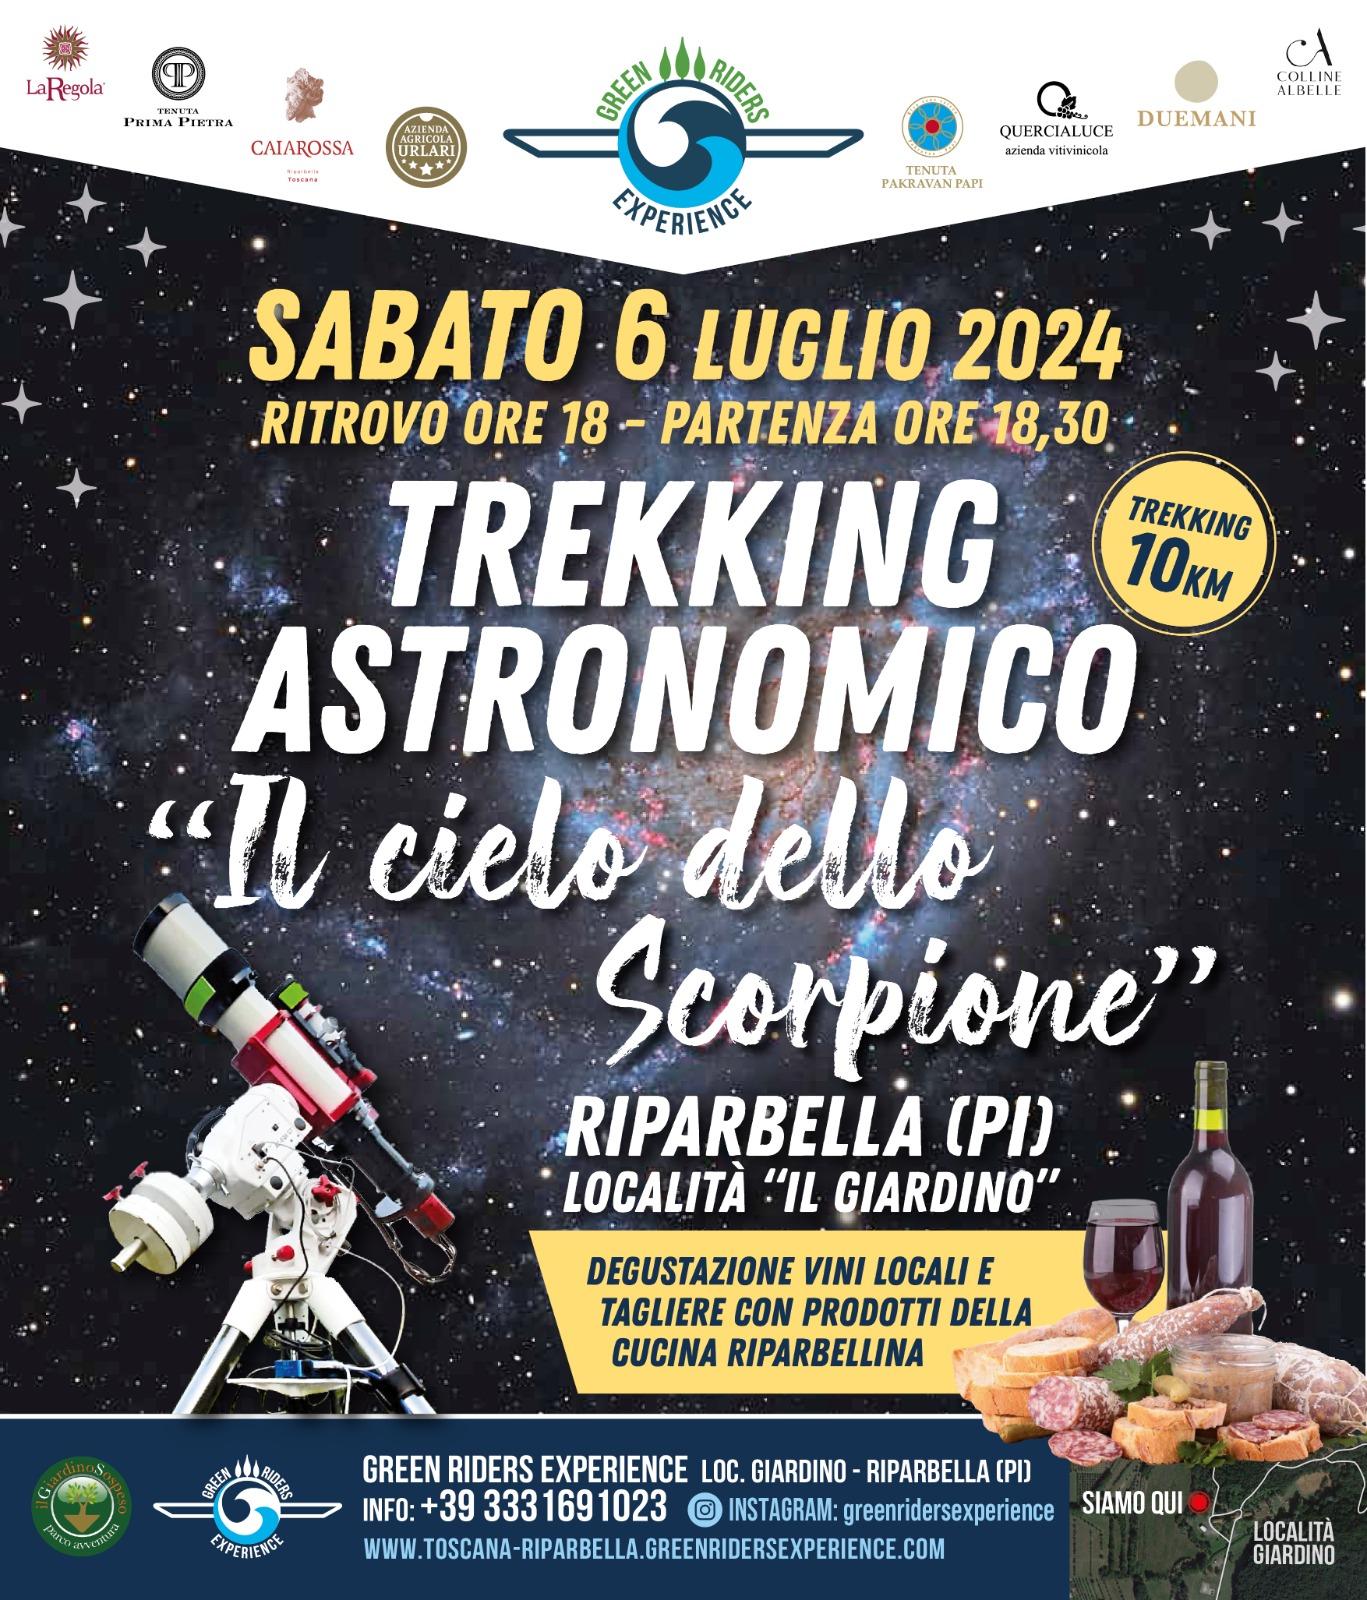 TREKKING ASTRONOMICO SABATO 6 LUGLIO "IL CIELO DELLO SCORPIONE"